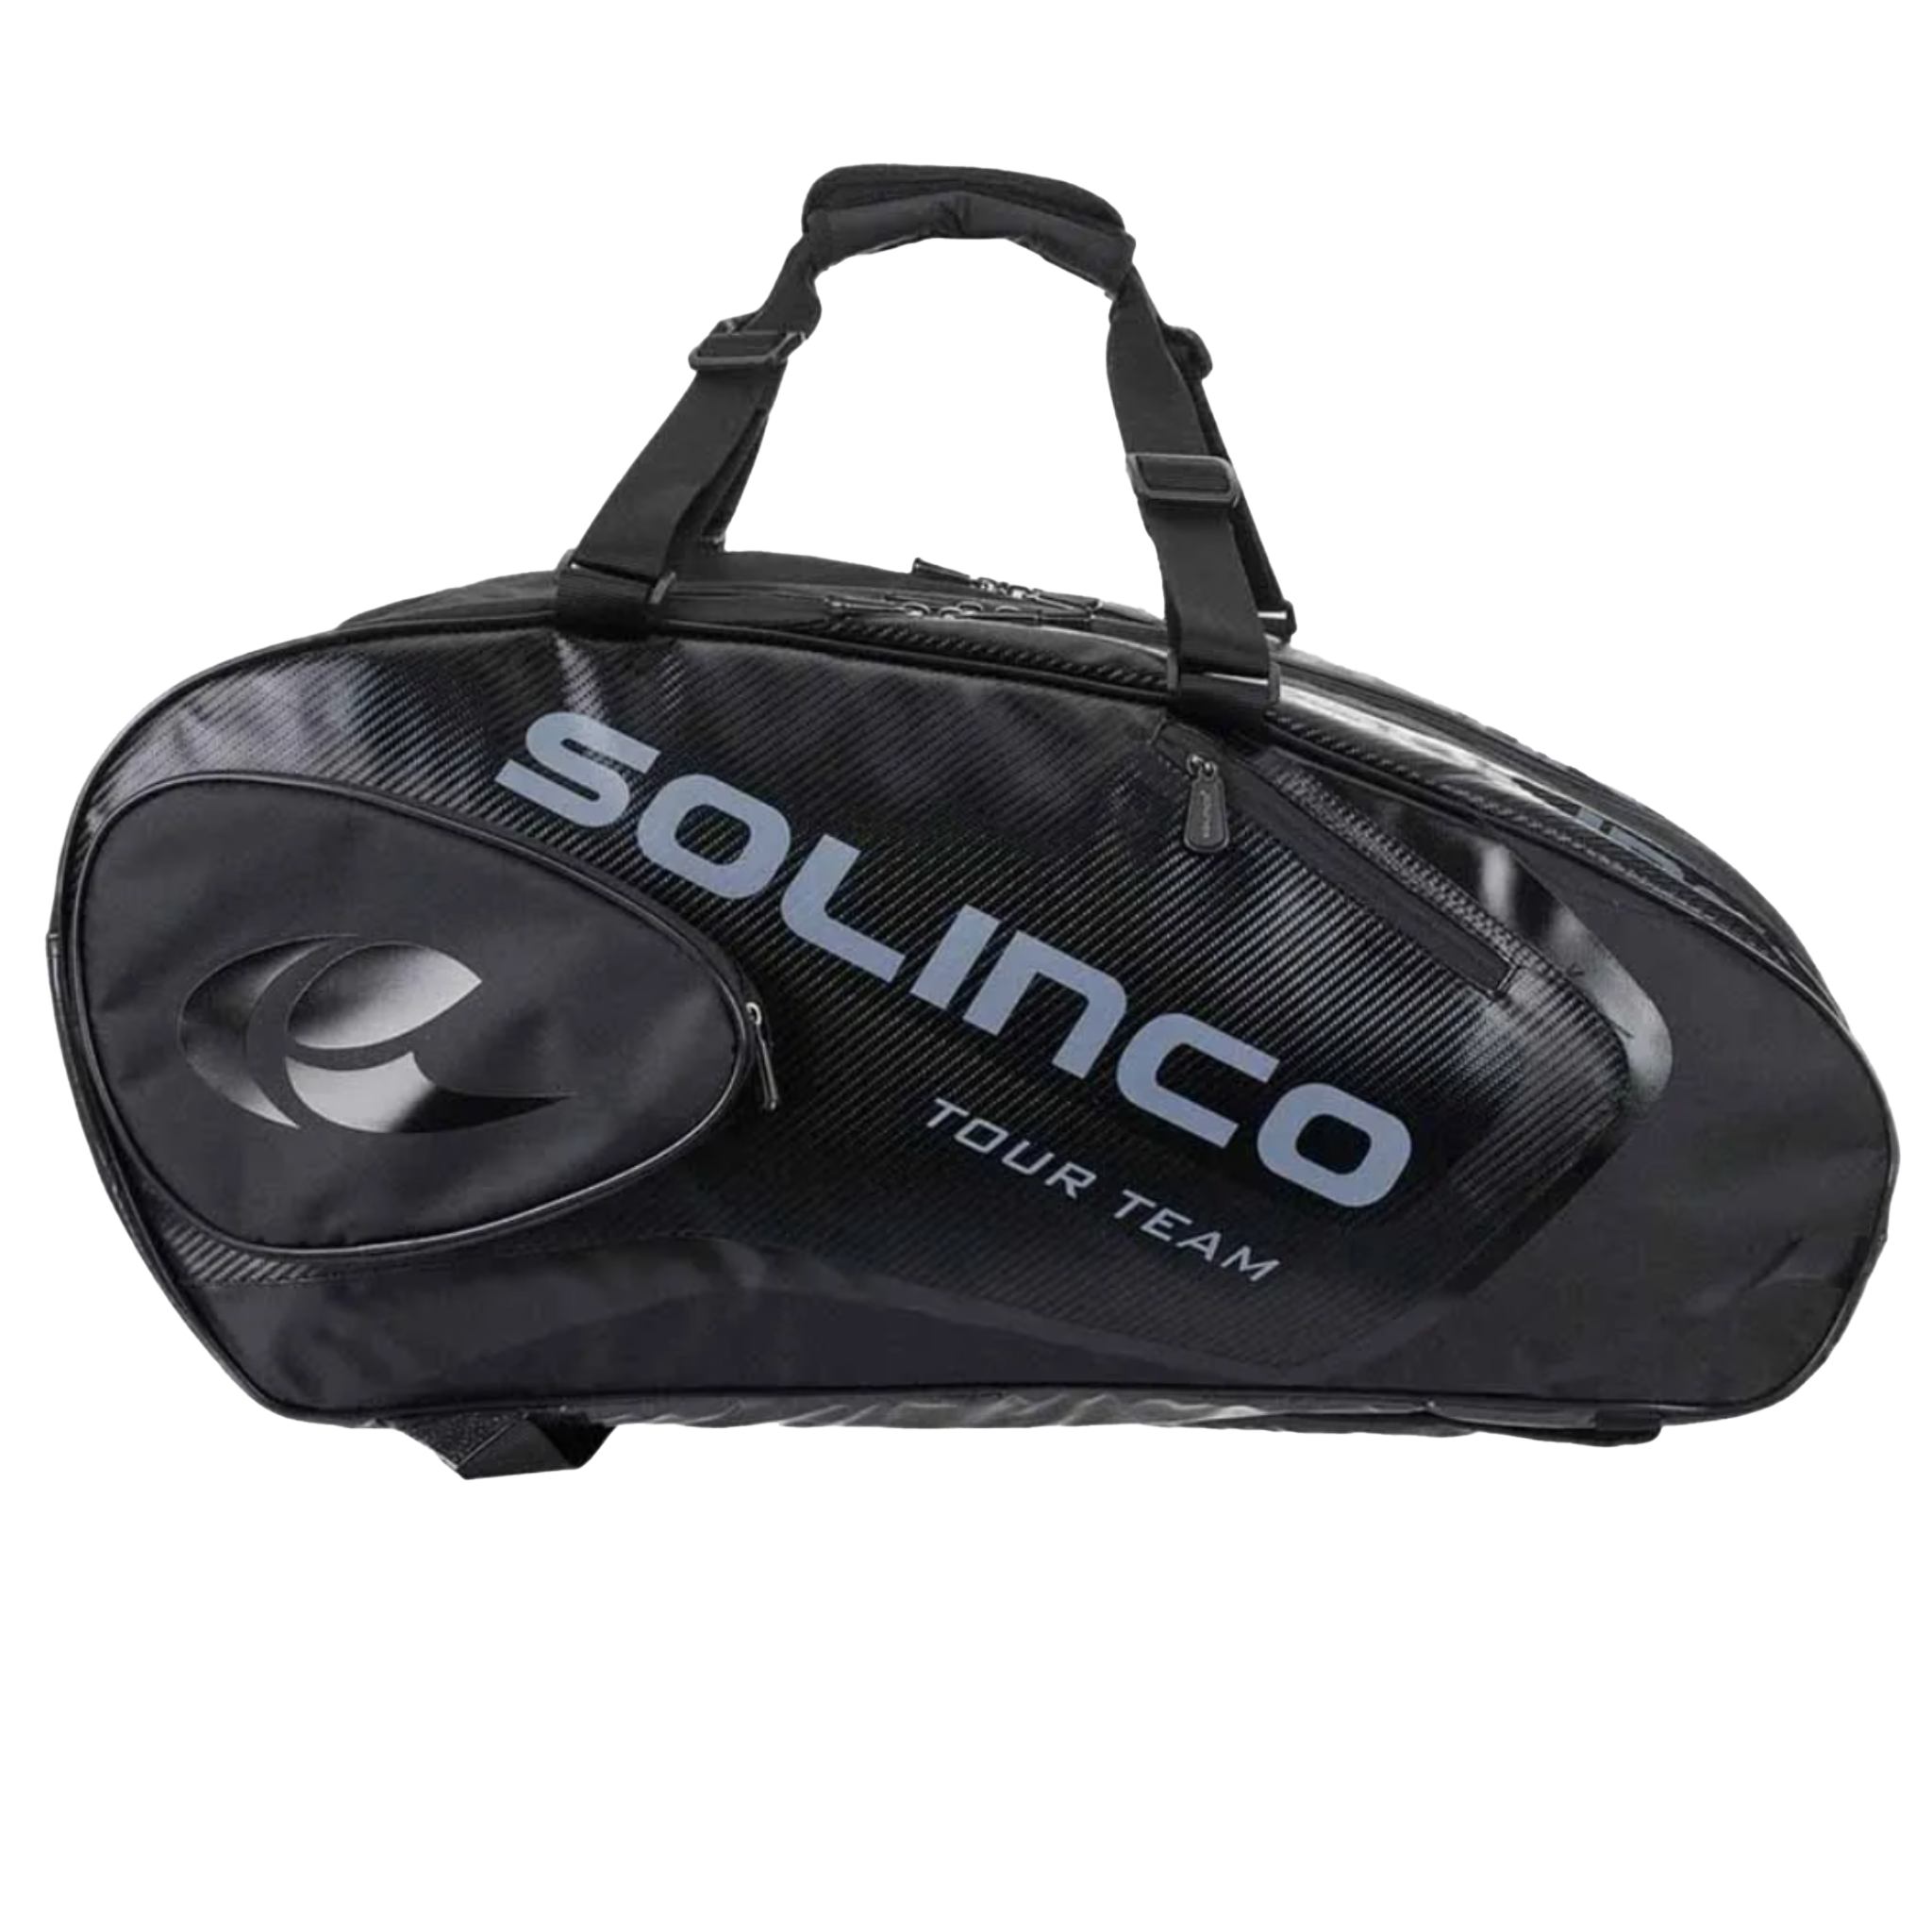 Solinco 15-Pack Tour Bag - Blackout